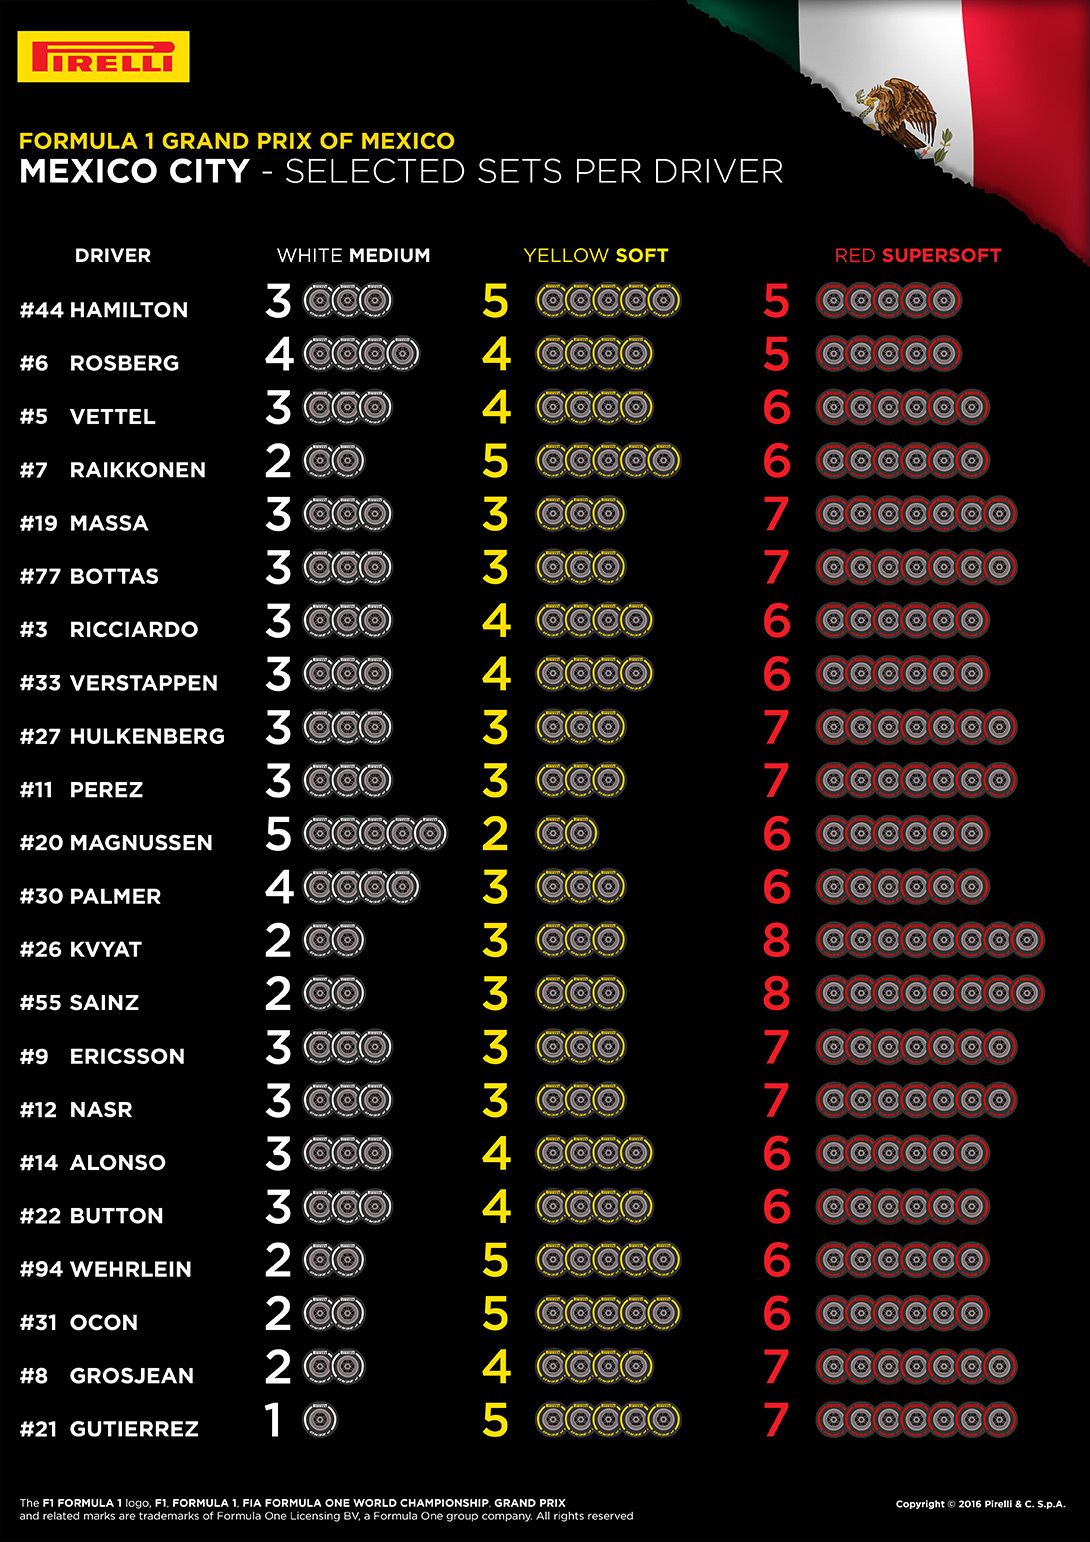 Le scelte dei piloti per il Gran Premio del Messico (foto da: hub.pirelli.com)